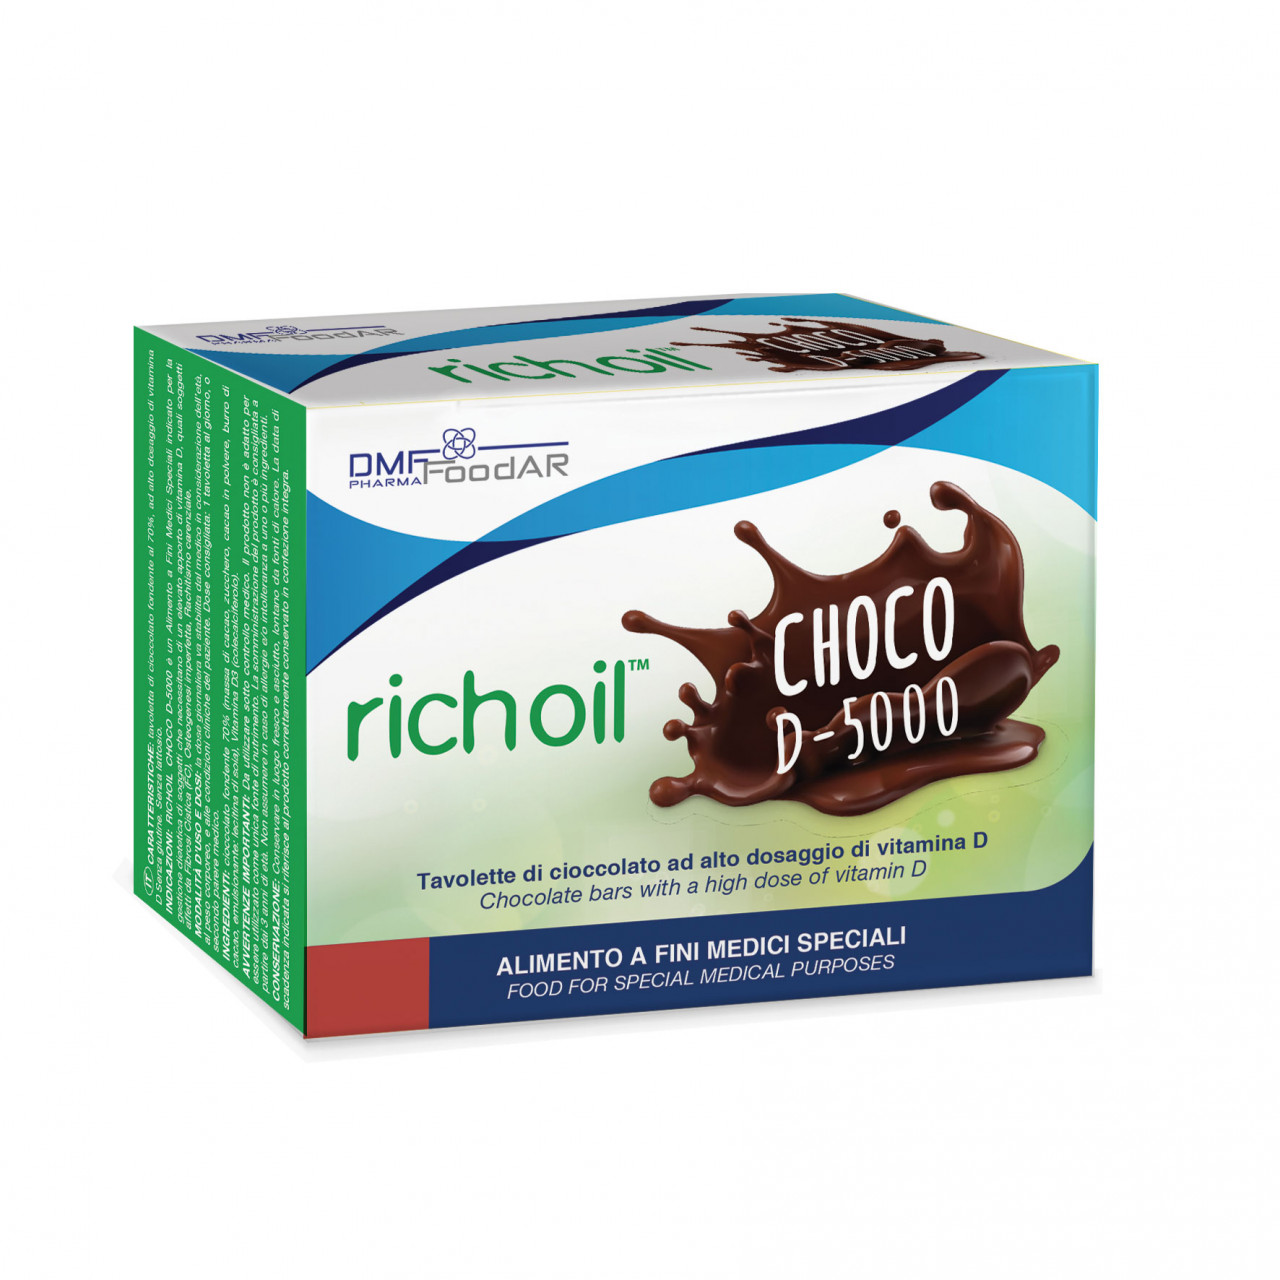 Richoil Choco D-5000 14 x 10g